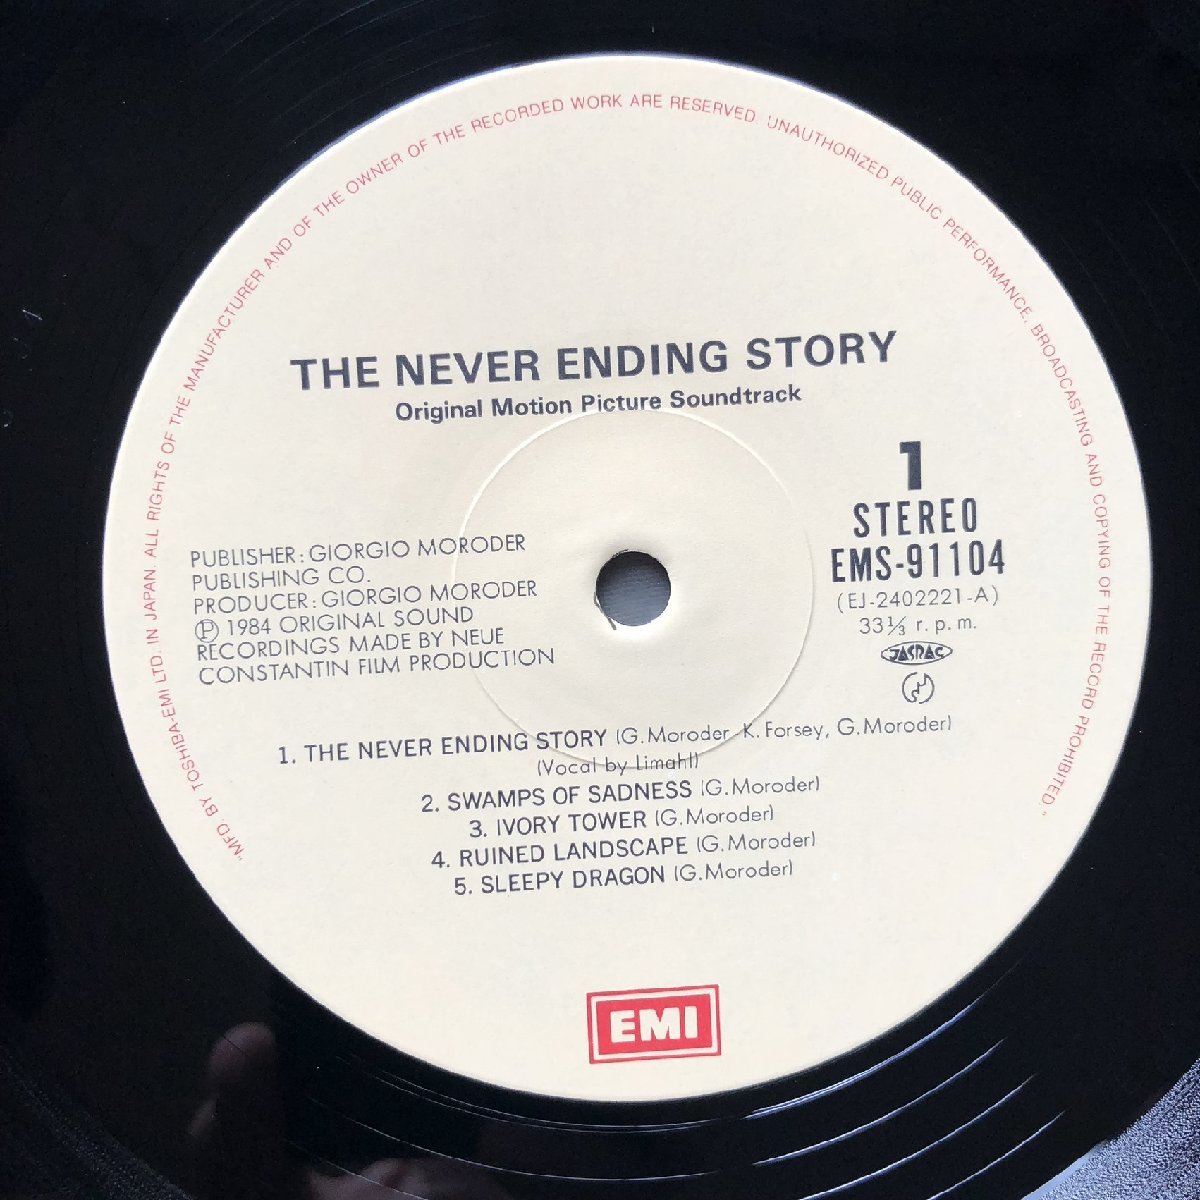  прекрасный запись хорошо jacket 1984 год записано в Японии саундтрек LP запись ne балка *en DIN g* -тактный - Lee The Never Ending Story с лентой li Maar, Limahl